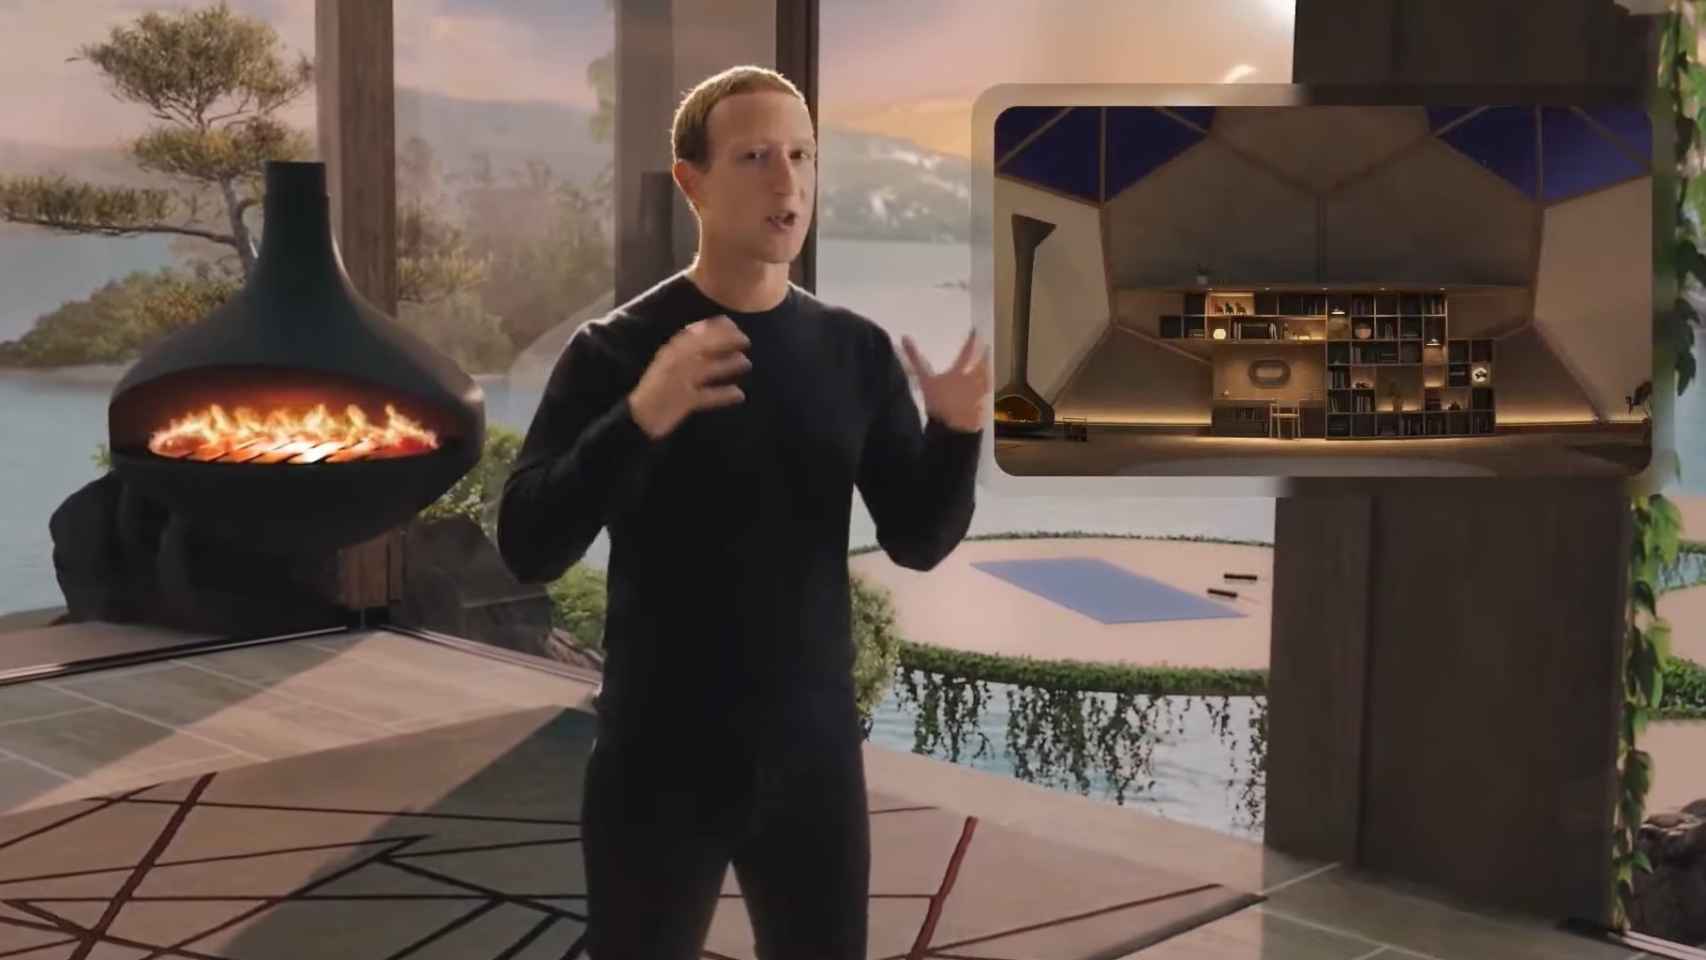 Imagen del avatar de Mark Zuckerberg en el metaverso durante el evento Facebook Connect 2021, en el que la compañía anunció el cambio de nombre a Meta Platforms.